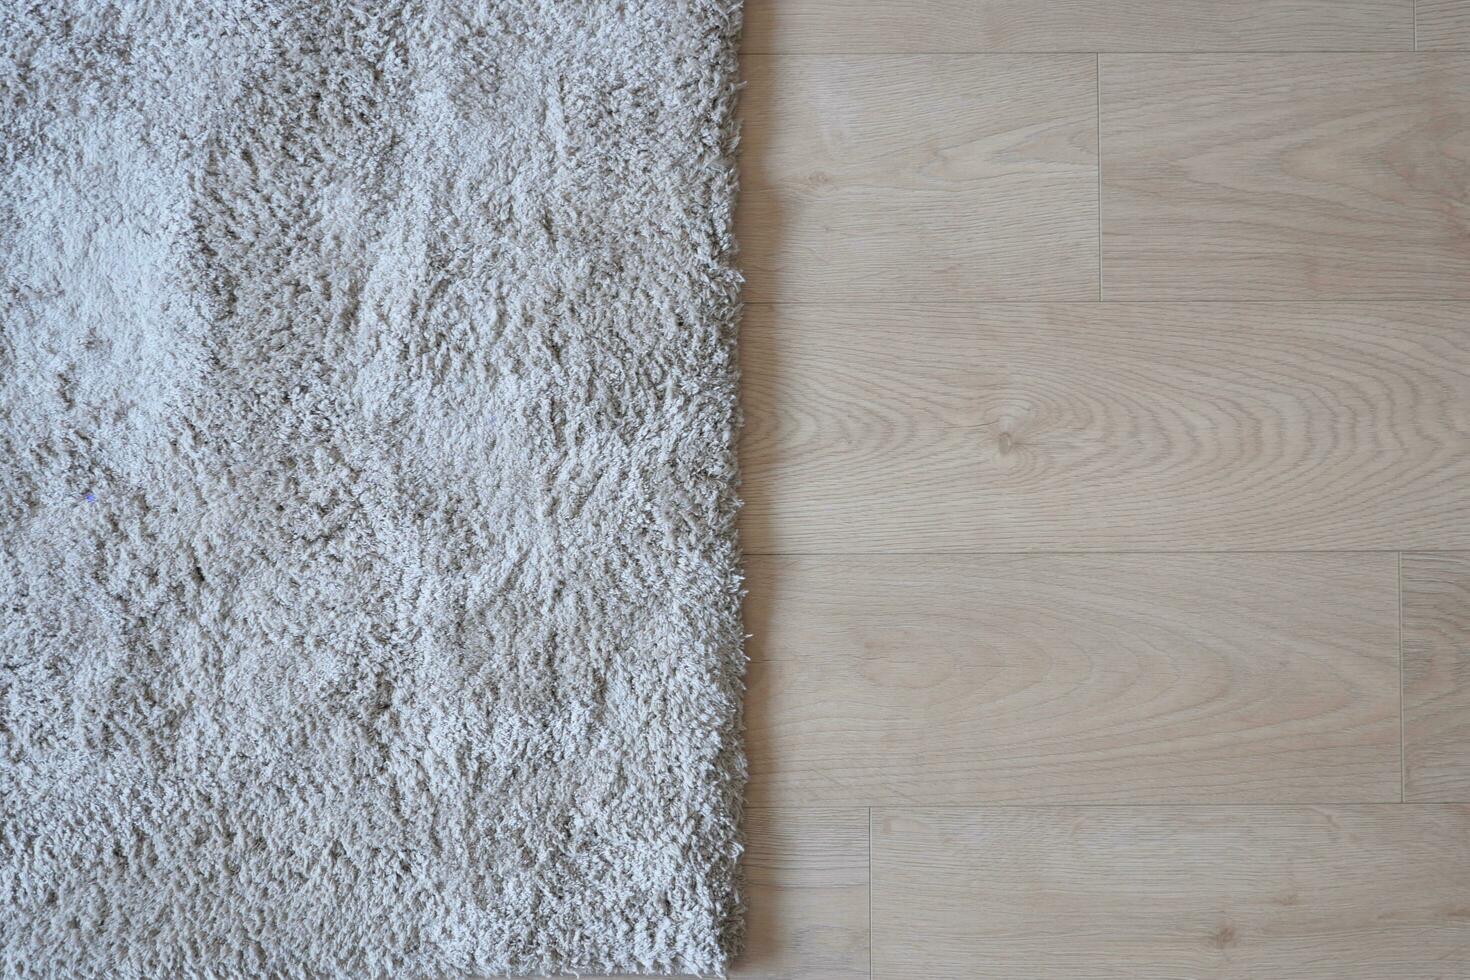 senza soluzione di continuità grigio tappeto struttura sfondo su di legno pavimento con copia spazio foto